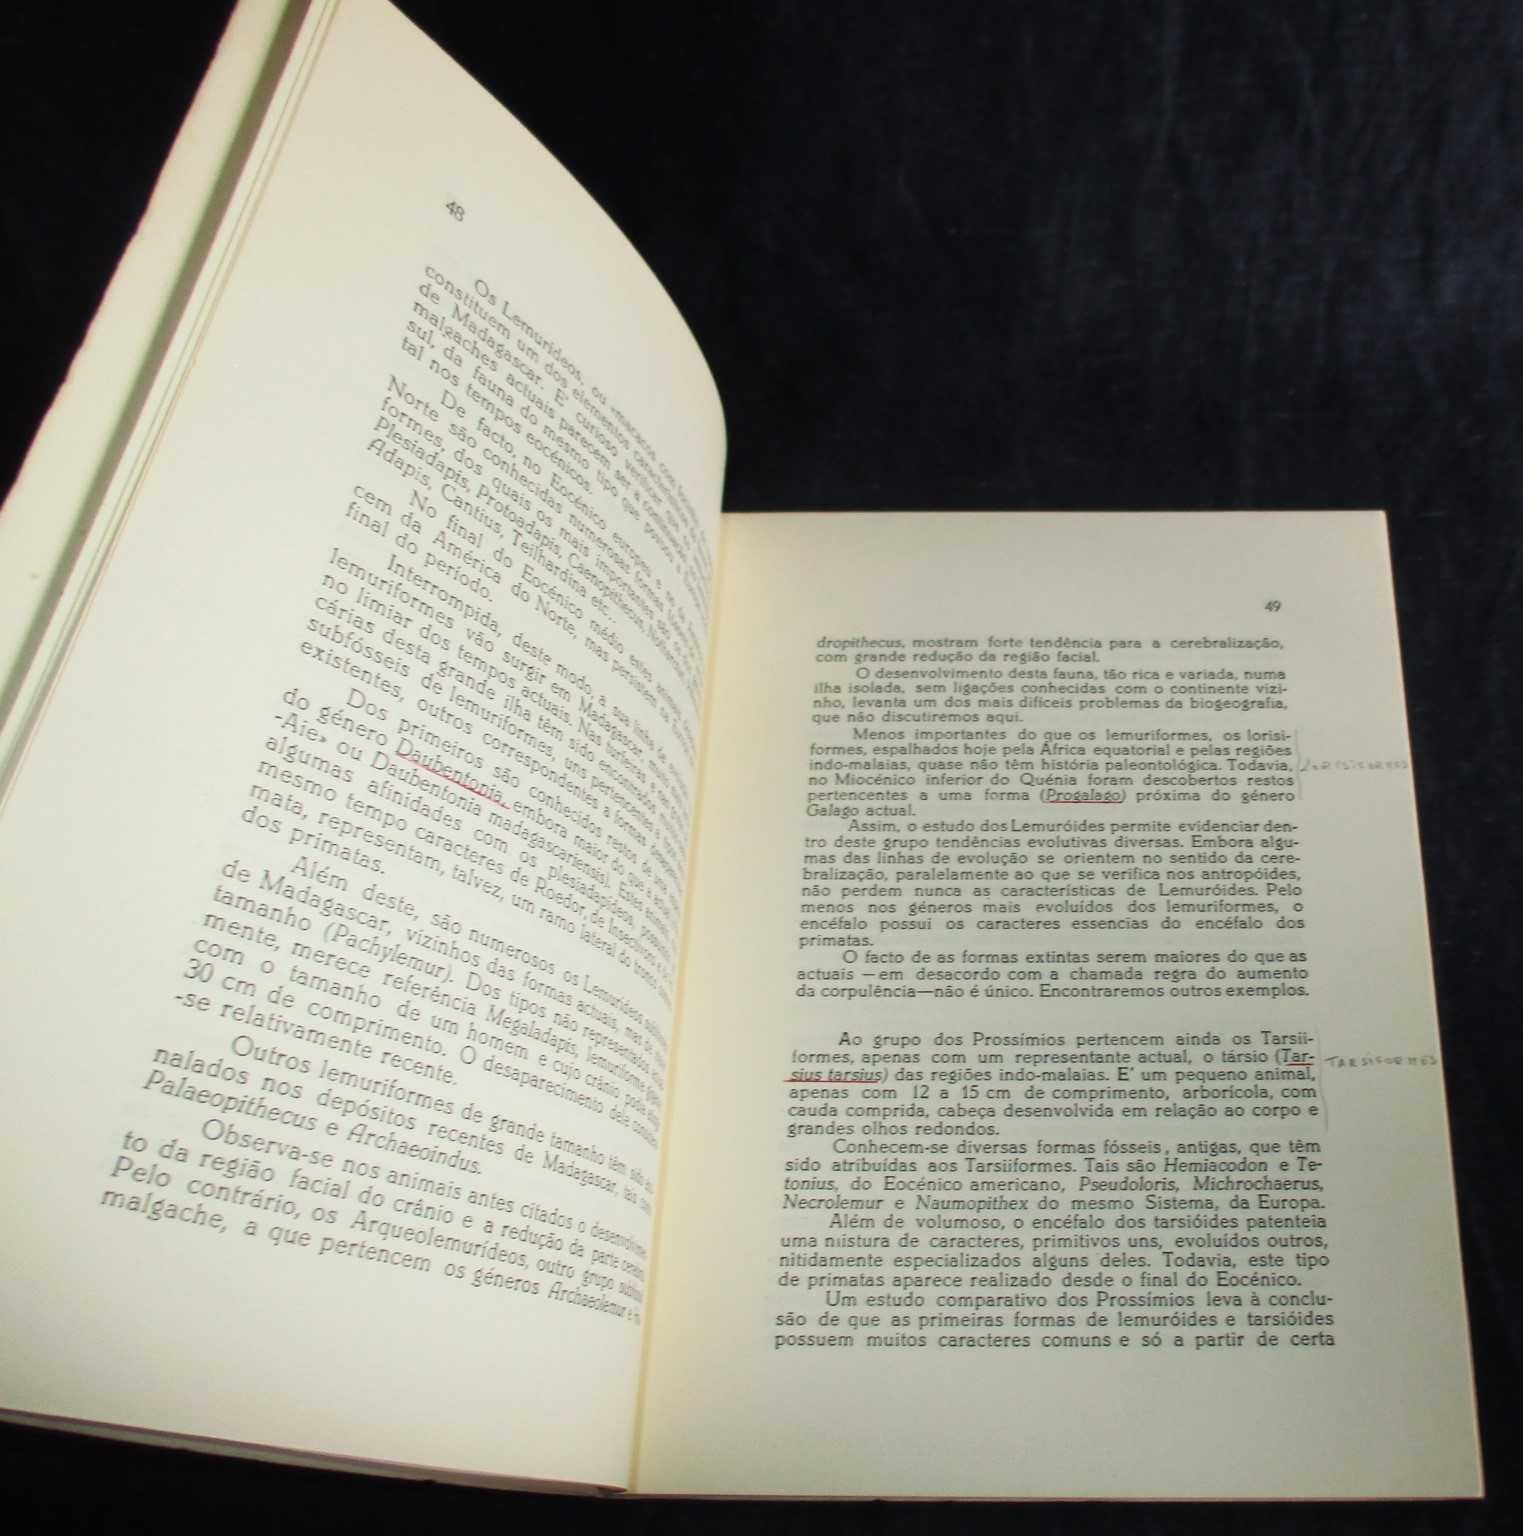 Livro A Paleontologia e a Origem do Homem Carlos Teixeira 1963